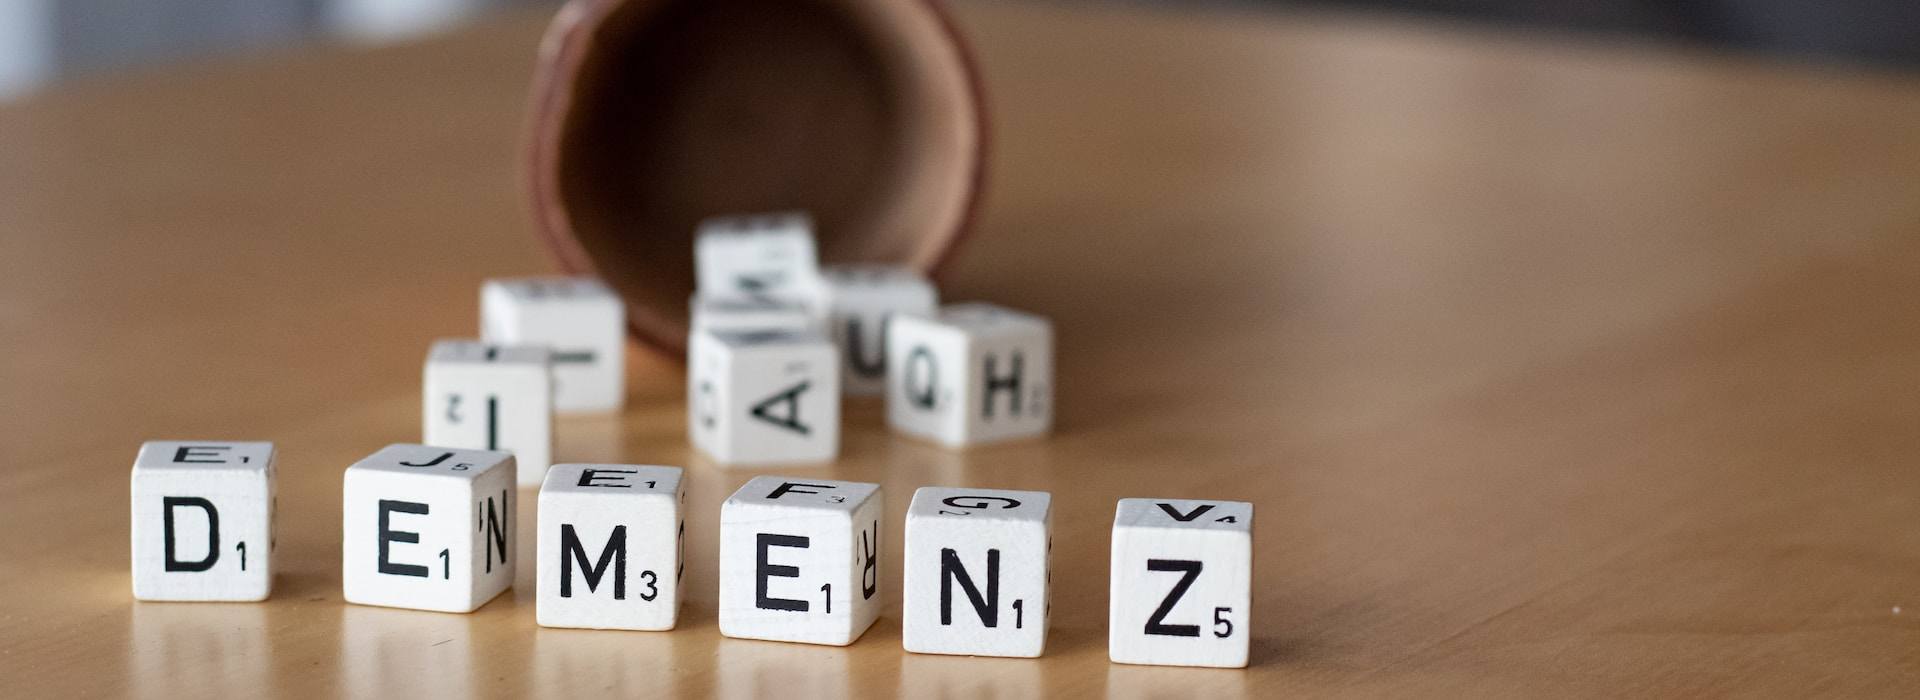 Demenzberatung - Symbolbild mit Buchstabenwürfeln, die das Wort Demenz zeigen.